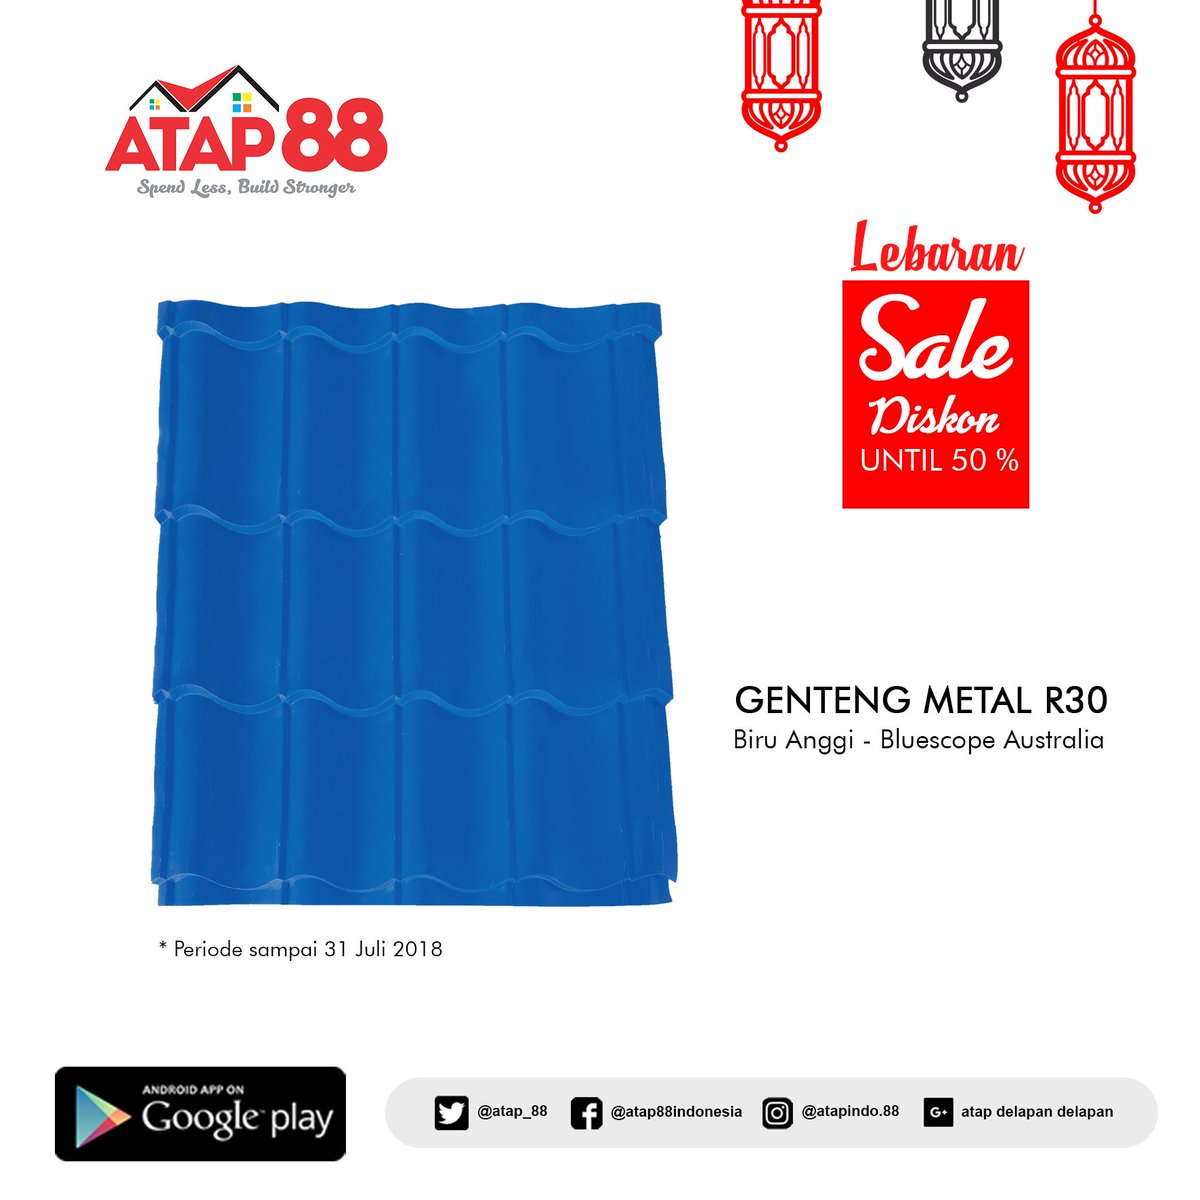 Wow #LebaranSale dari ATAP 88!

Diskon #bertubi-tubi sampai 50% untuk pembelian #Genteng #Metal Bluescope warna biru anggi. Syarat dan ketentuan berlaku.
More info hubungi ke 0812-3241-8168